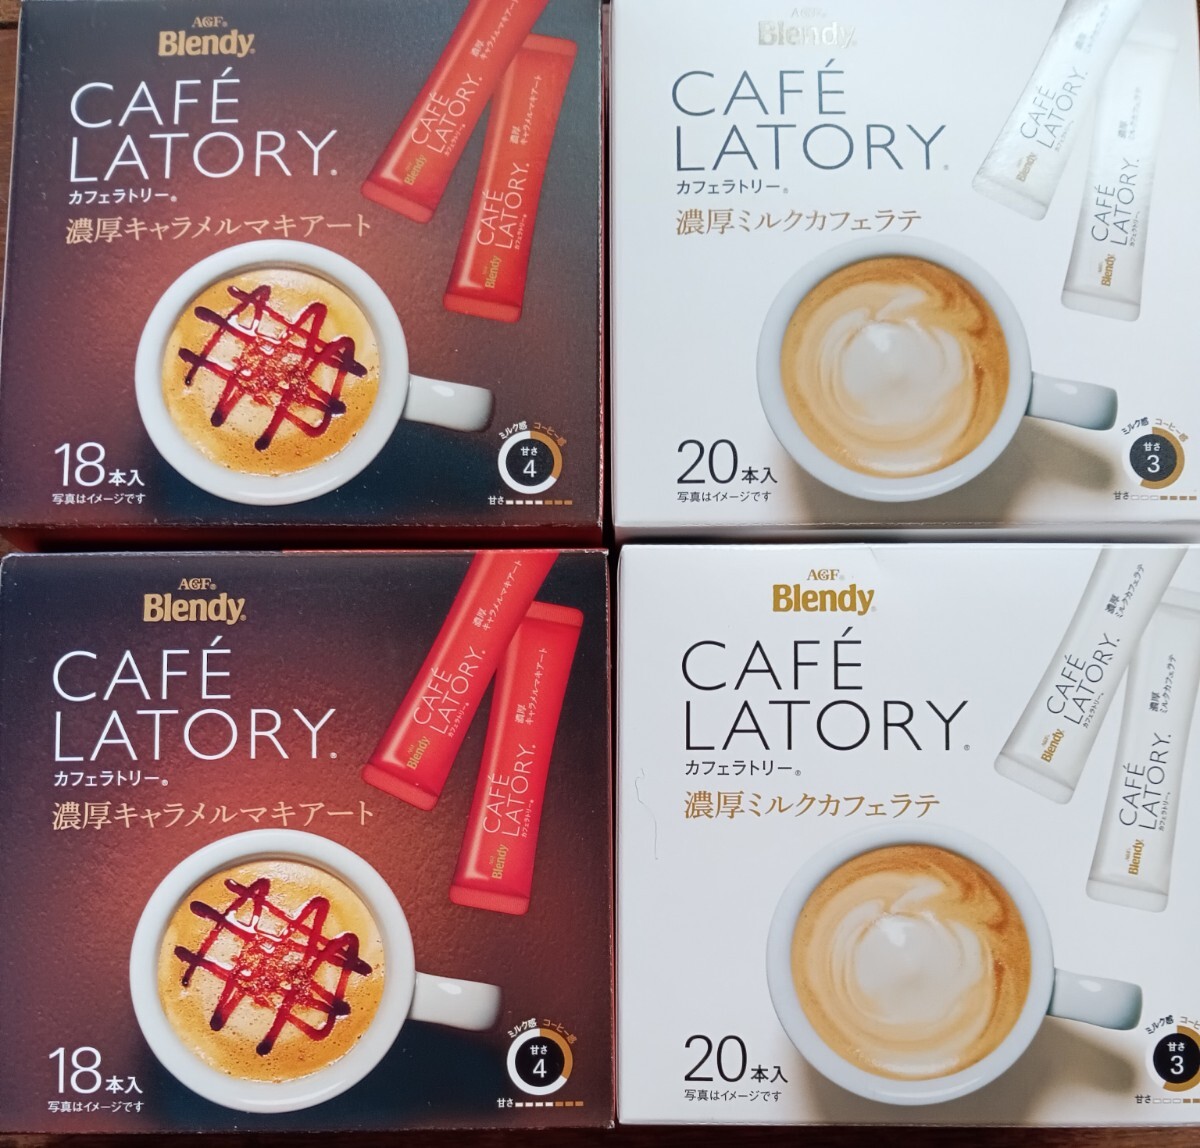  палочка кофе AGFb Len ti Cafe lato Lee . толщина молоко Cafe Latte!. толщина карамель maki искусство!4 коробка 76 шт. комплект ( включая доставку )